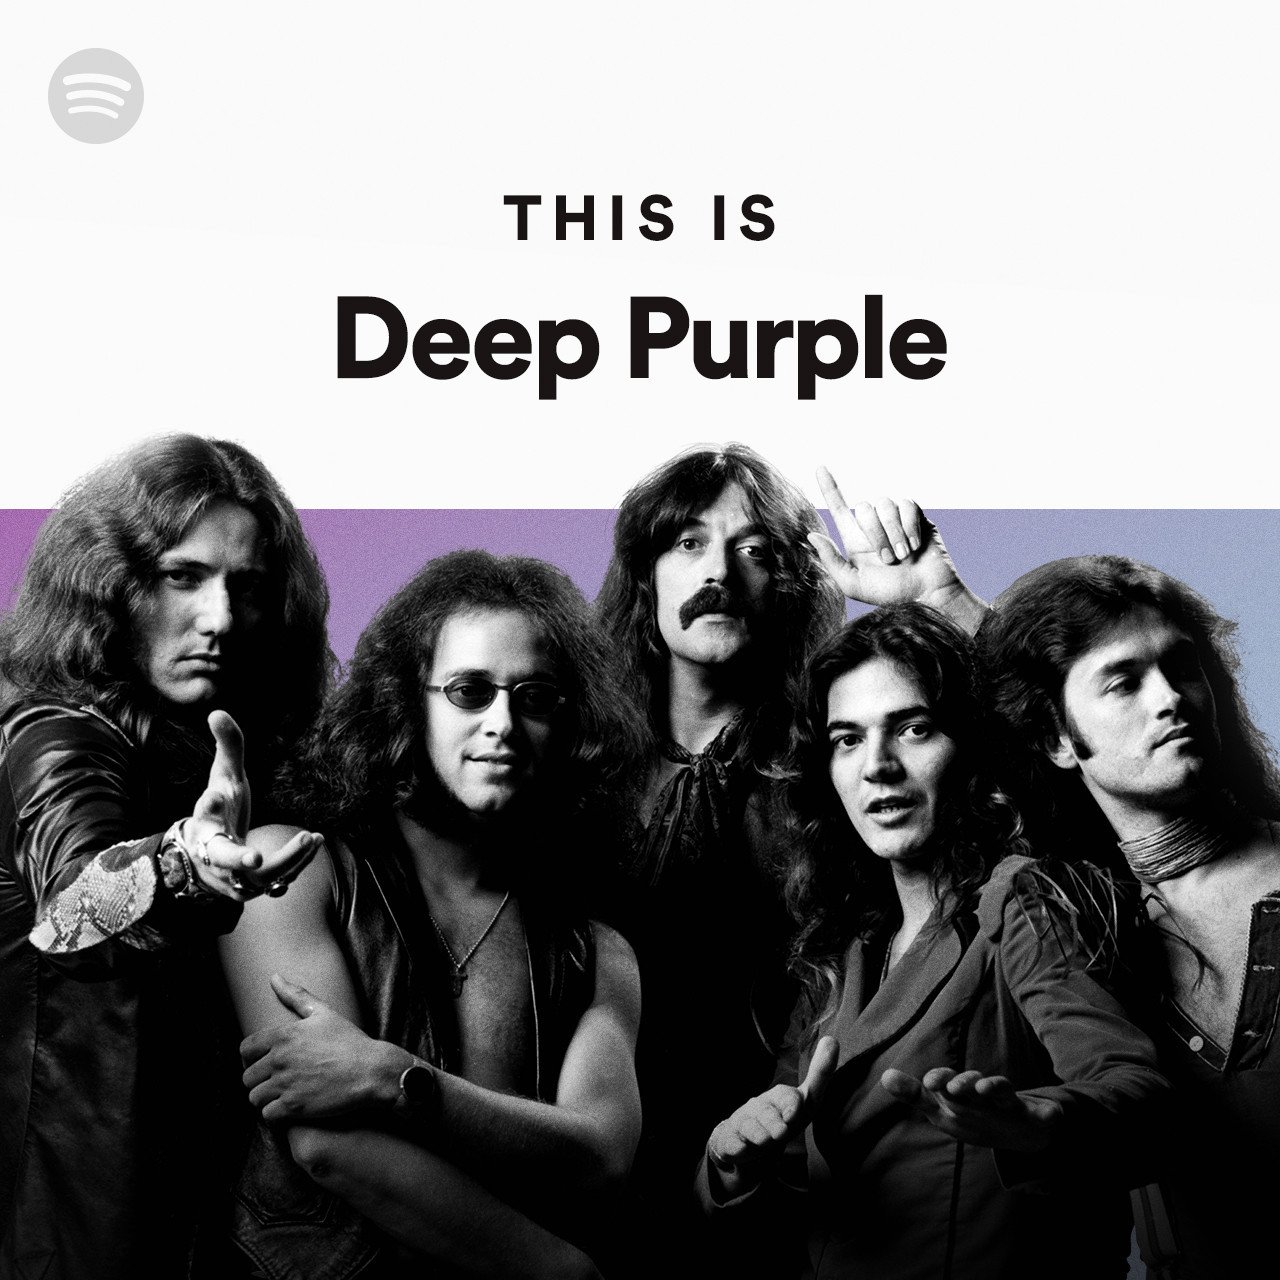 Дип перпл отзывы. Группа дип перпл. Группа Deep Purple 2022. Состав дип пёрпл 1972. Deep Purple 1969 обложка.